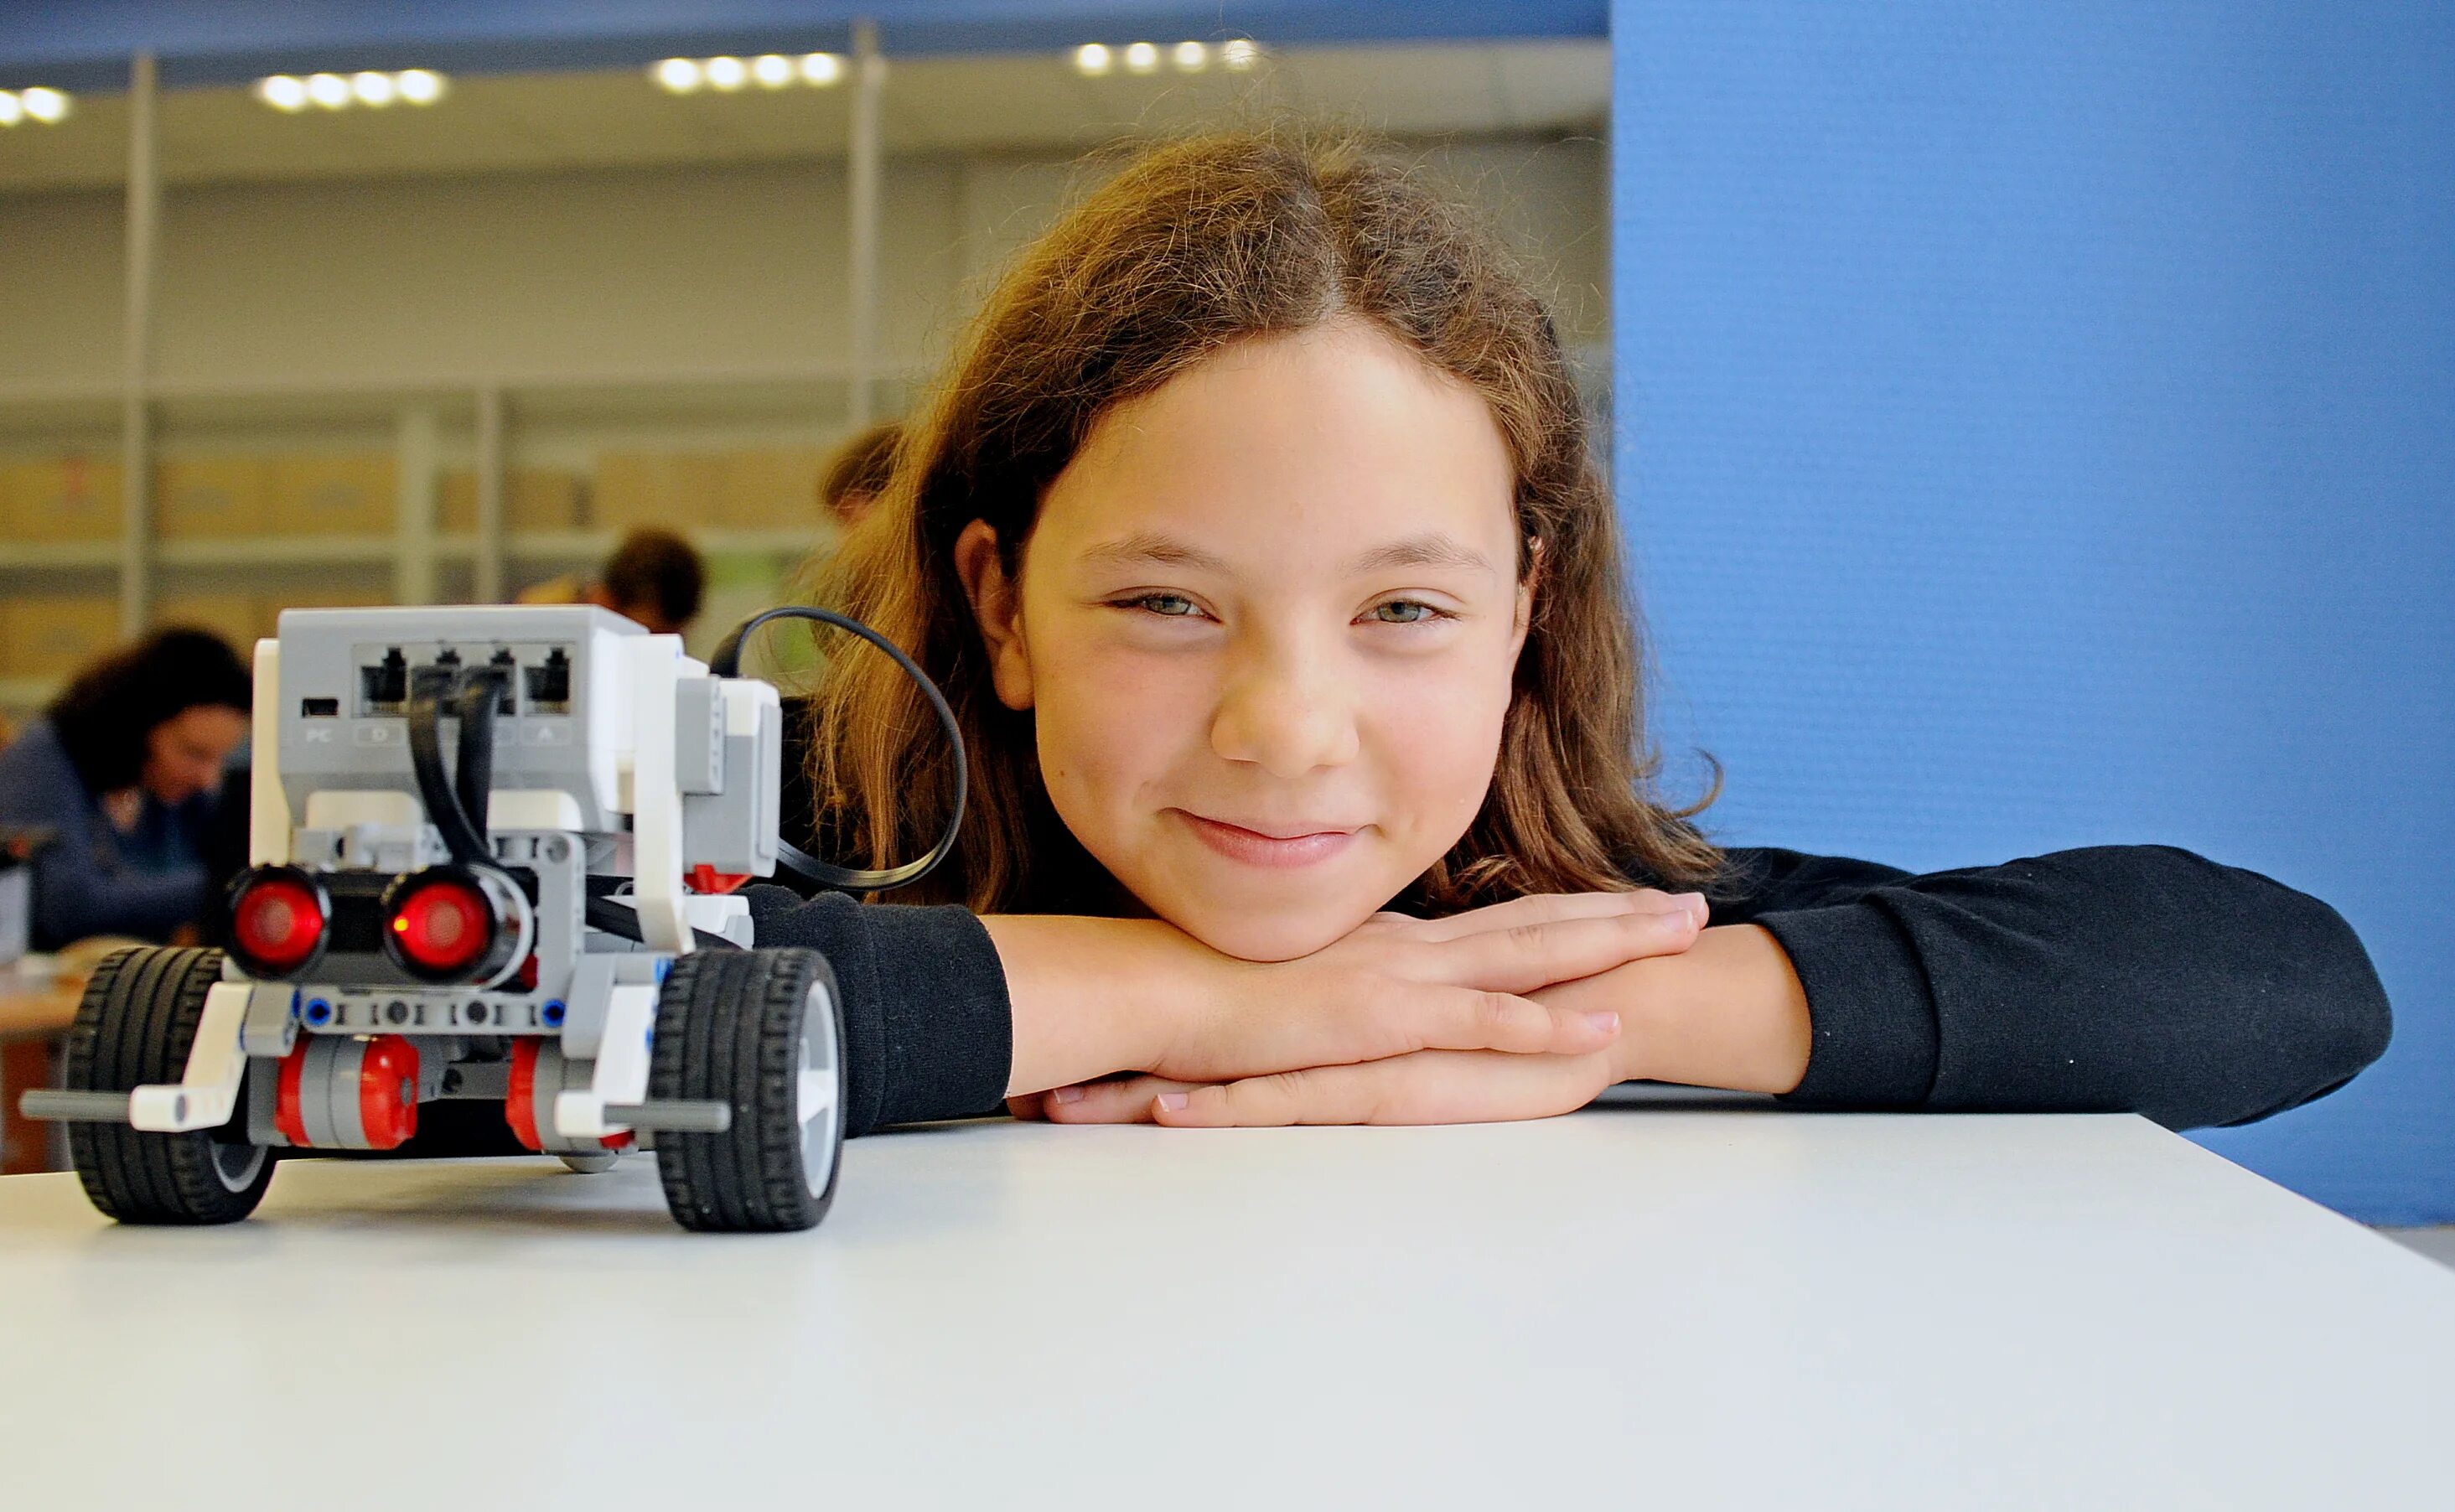 Юные робототехники. Робототехника для детей. Роботостроение для детей. Робототехника в школе. Соревнования по робототехнике.